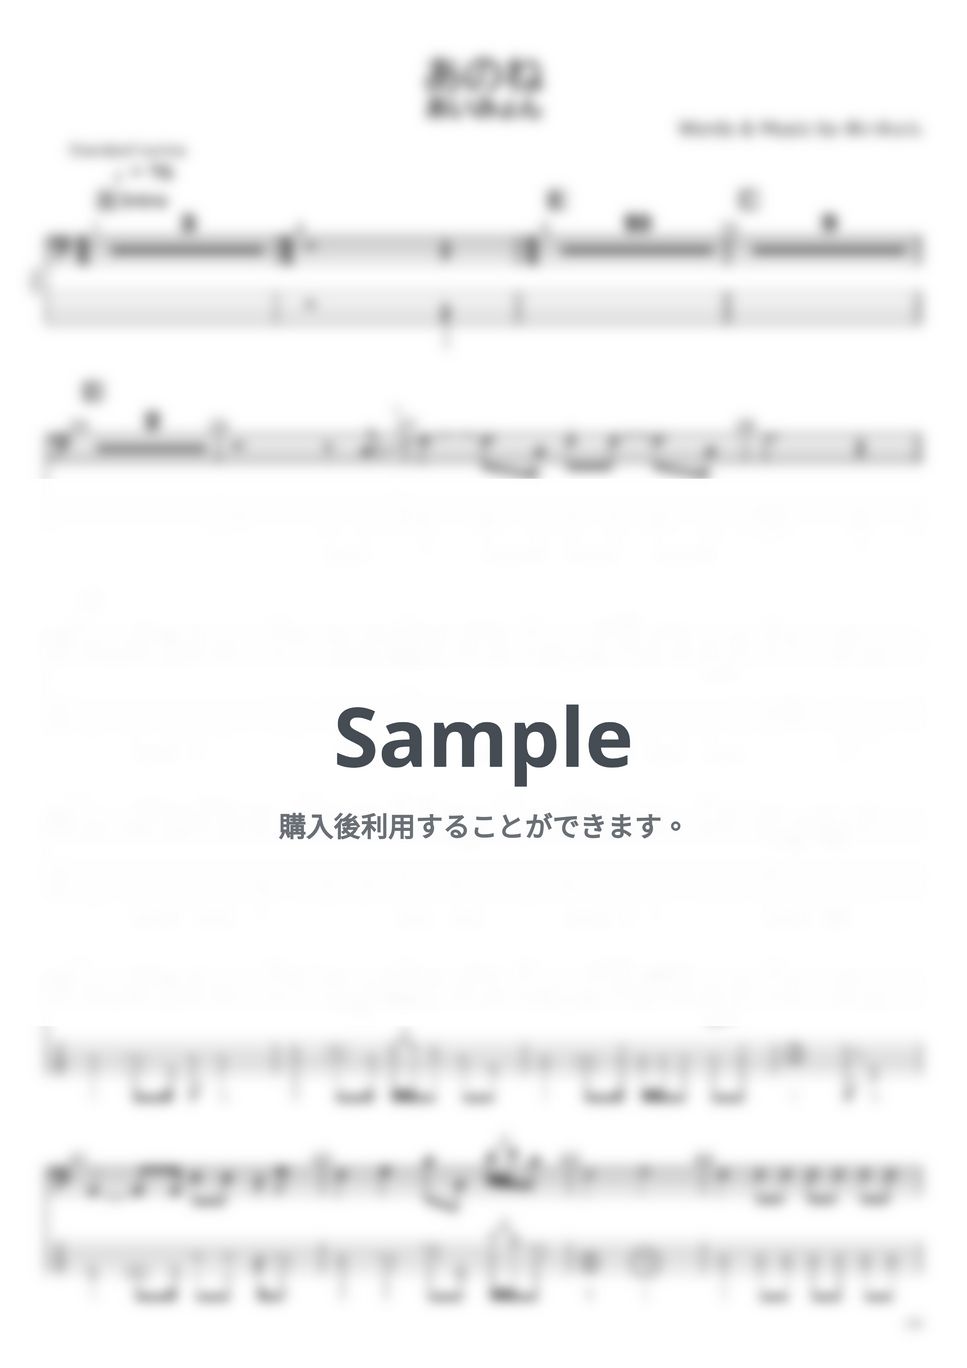 あいみょん - あいみょん ベースTAB譜面 10曲セット集Ⅱ by たぶべー